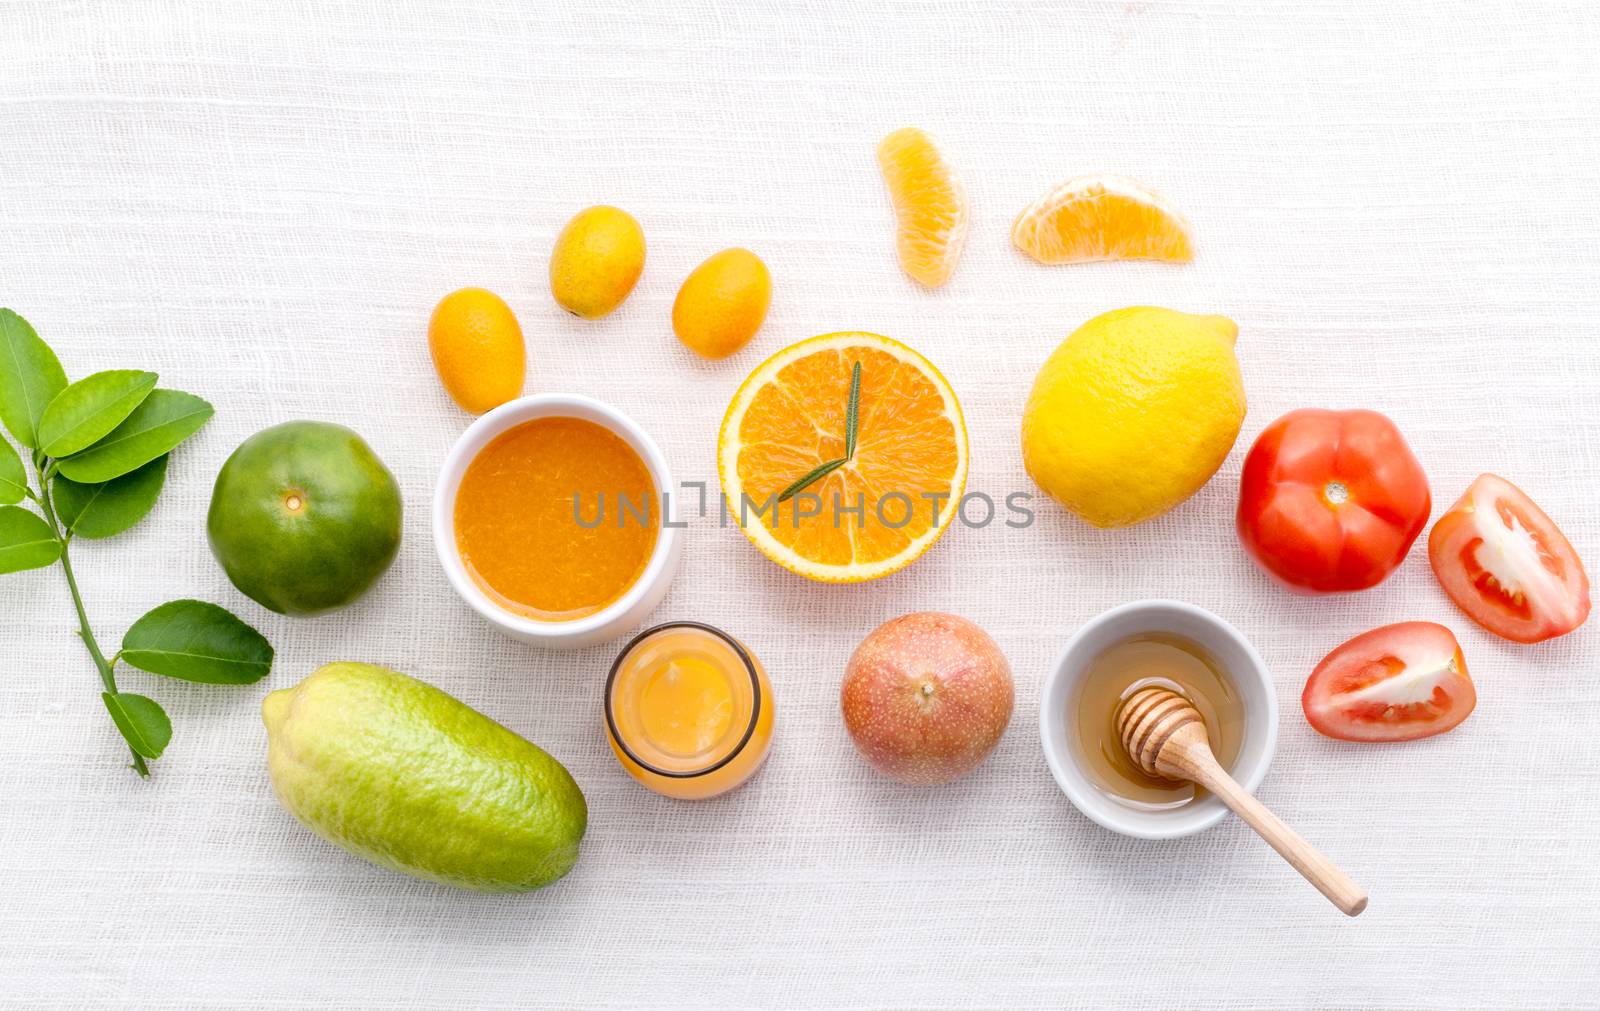 Breakfast with orange juice, oranges, oranges slice, passion fruit , ginger,tomato and Kiwi set up on wooden table .